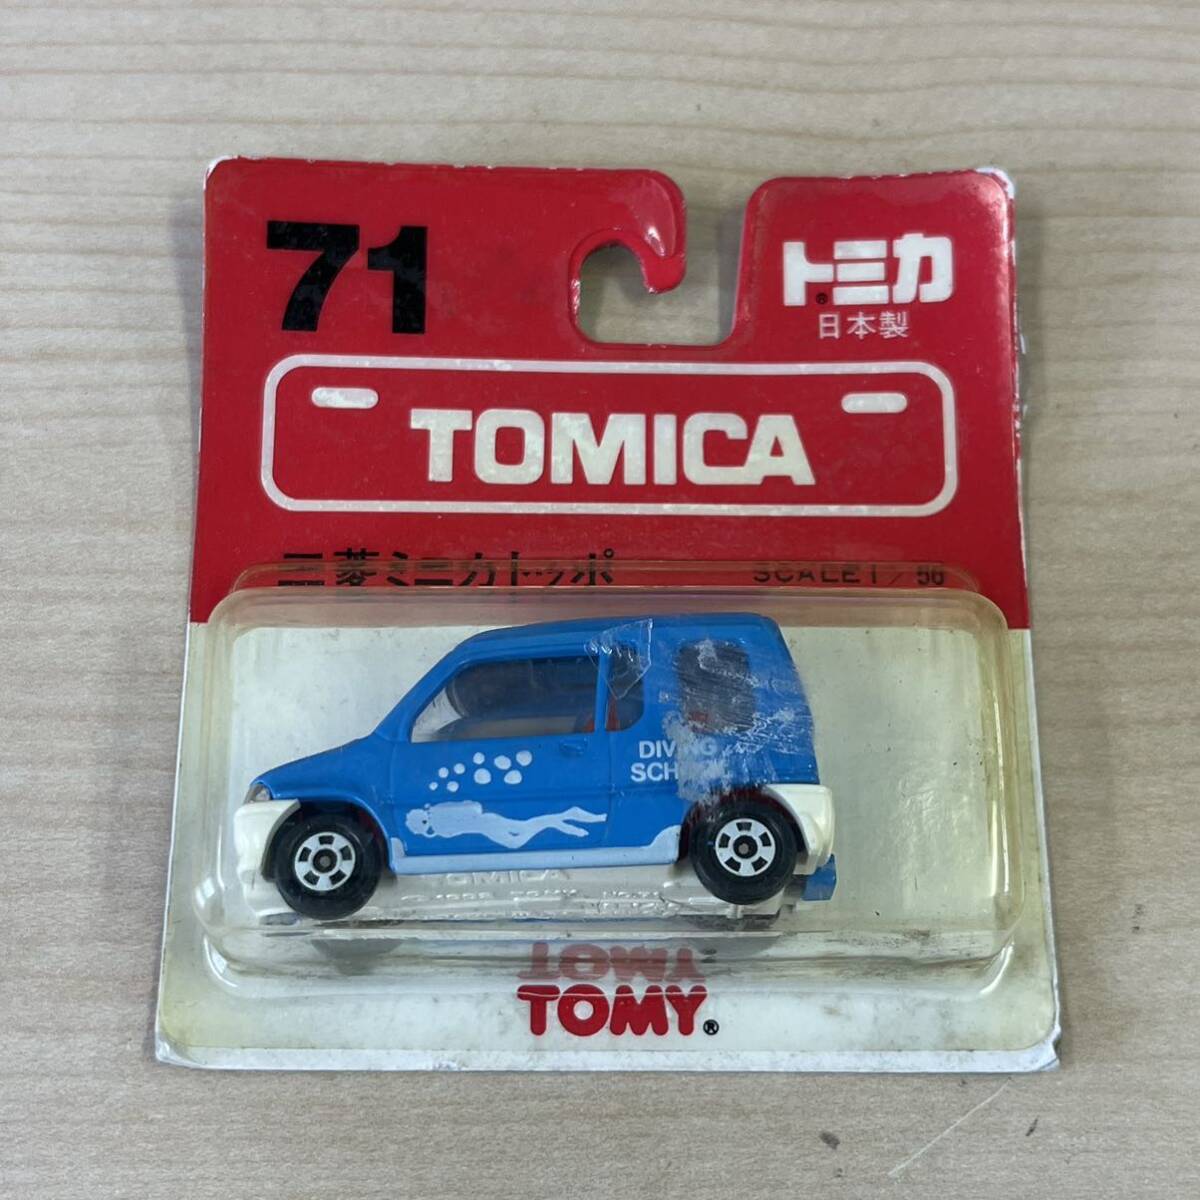 【TS0421 117】未開封 TOMICA トミカ 71 三菱ミニカトッポ ダイビングスクール 玩具の画像1